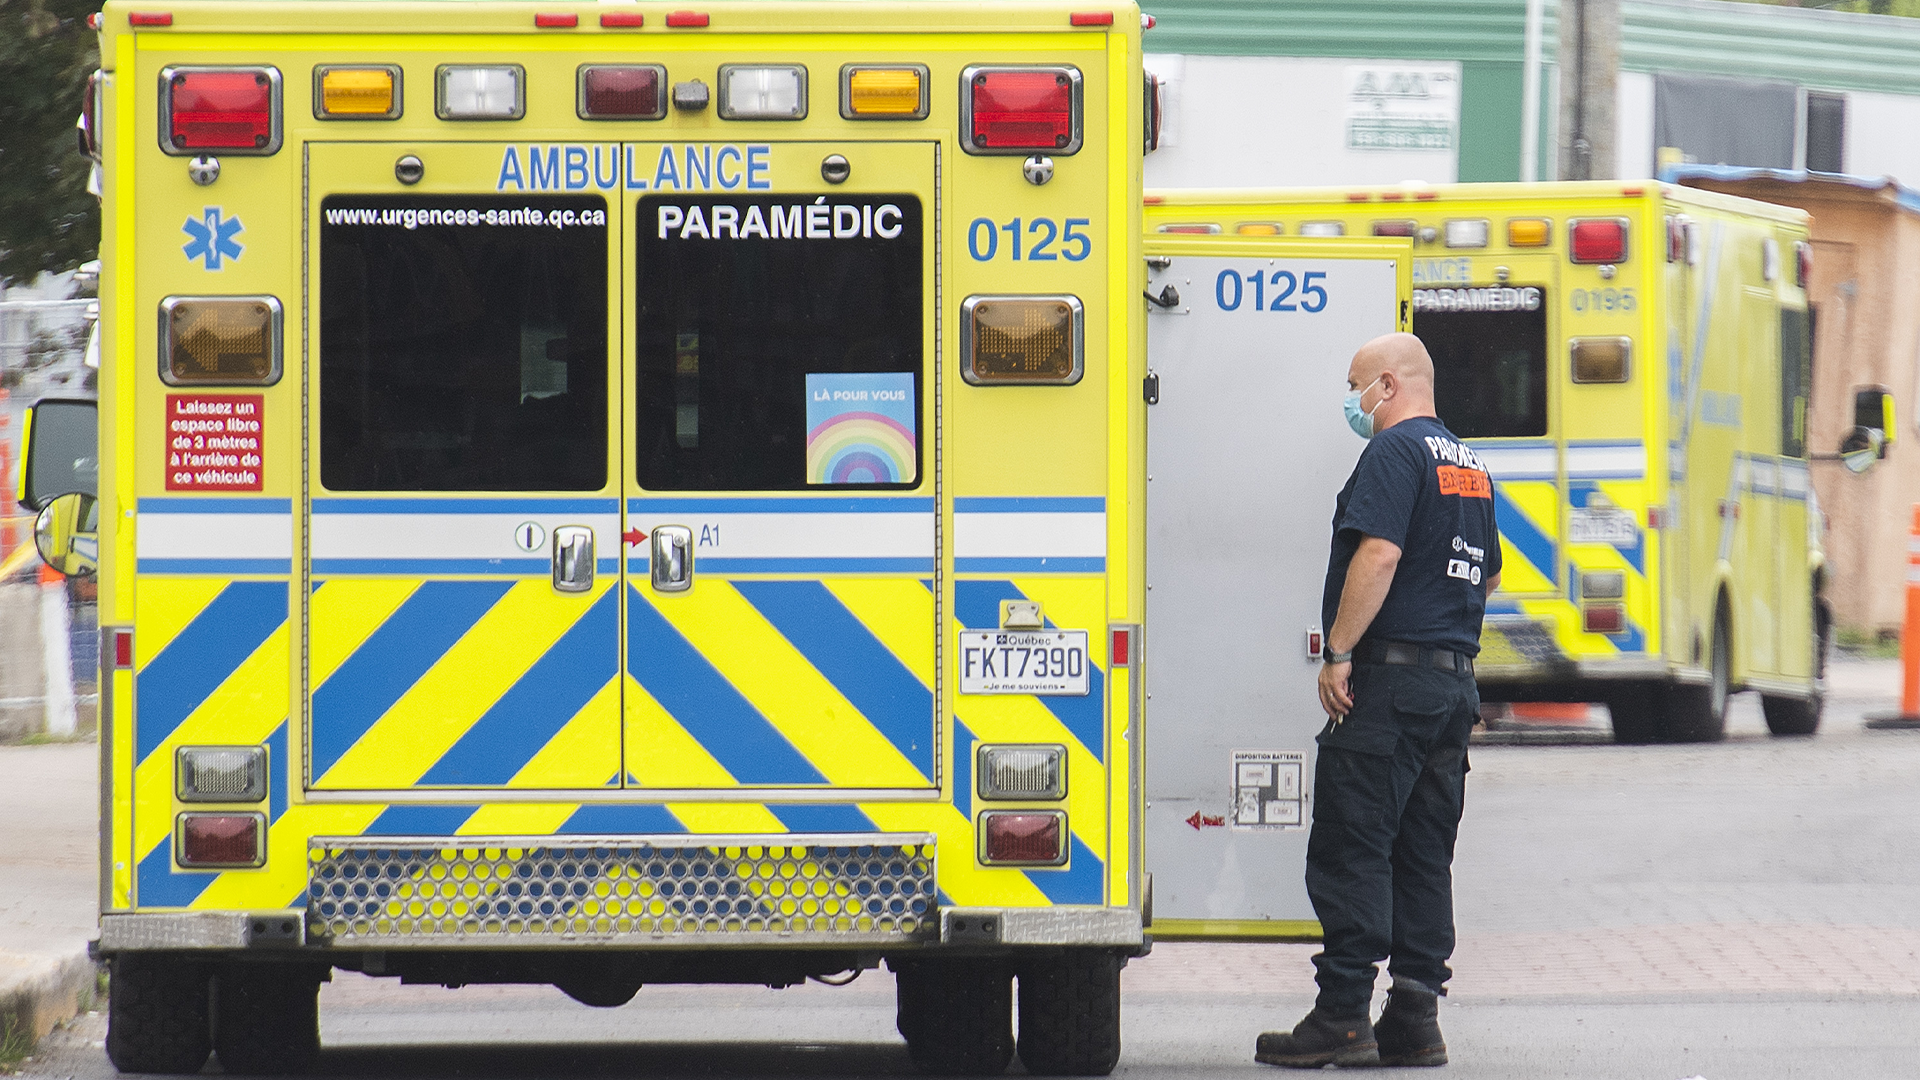  Le syndicat des ambulanciers paramédicaux d'Urgences-santé, qui couvre les territoires de Montréal et Laval, appliquera lundi des moyens de pression pour protester contre des conditions de travail qu'il juge inacceptable.